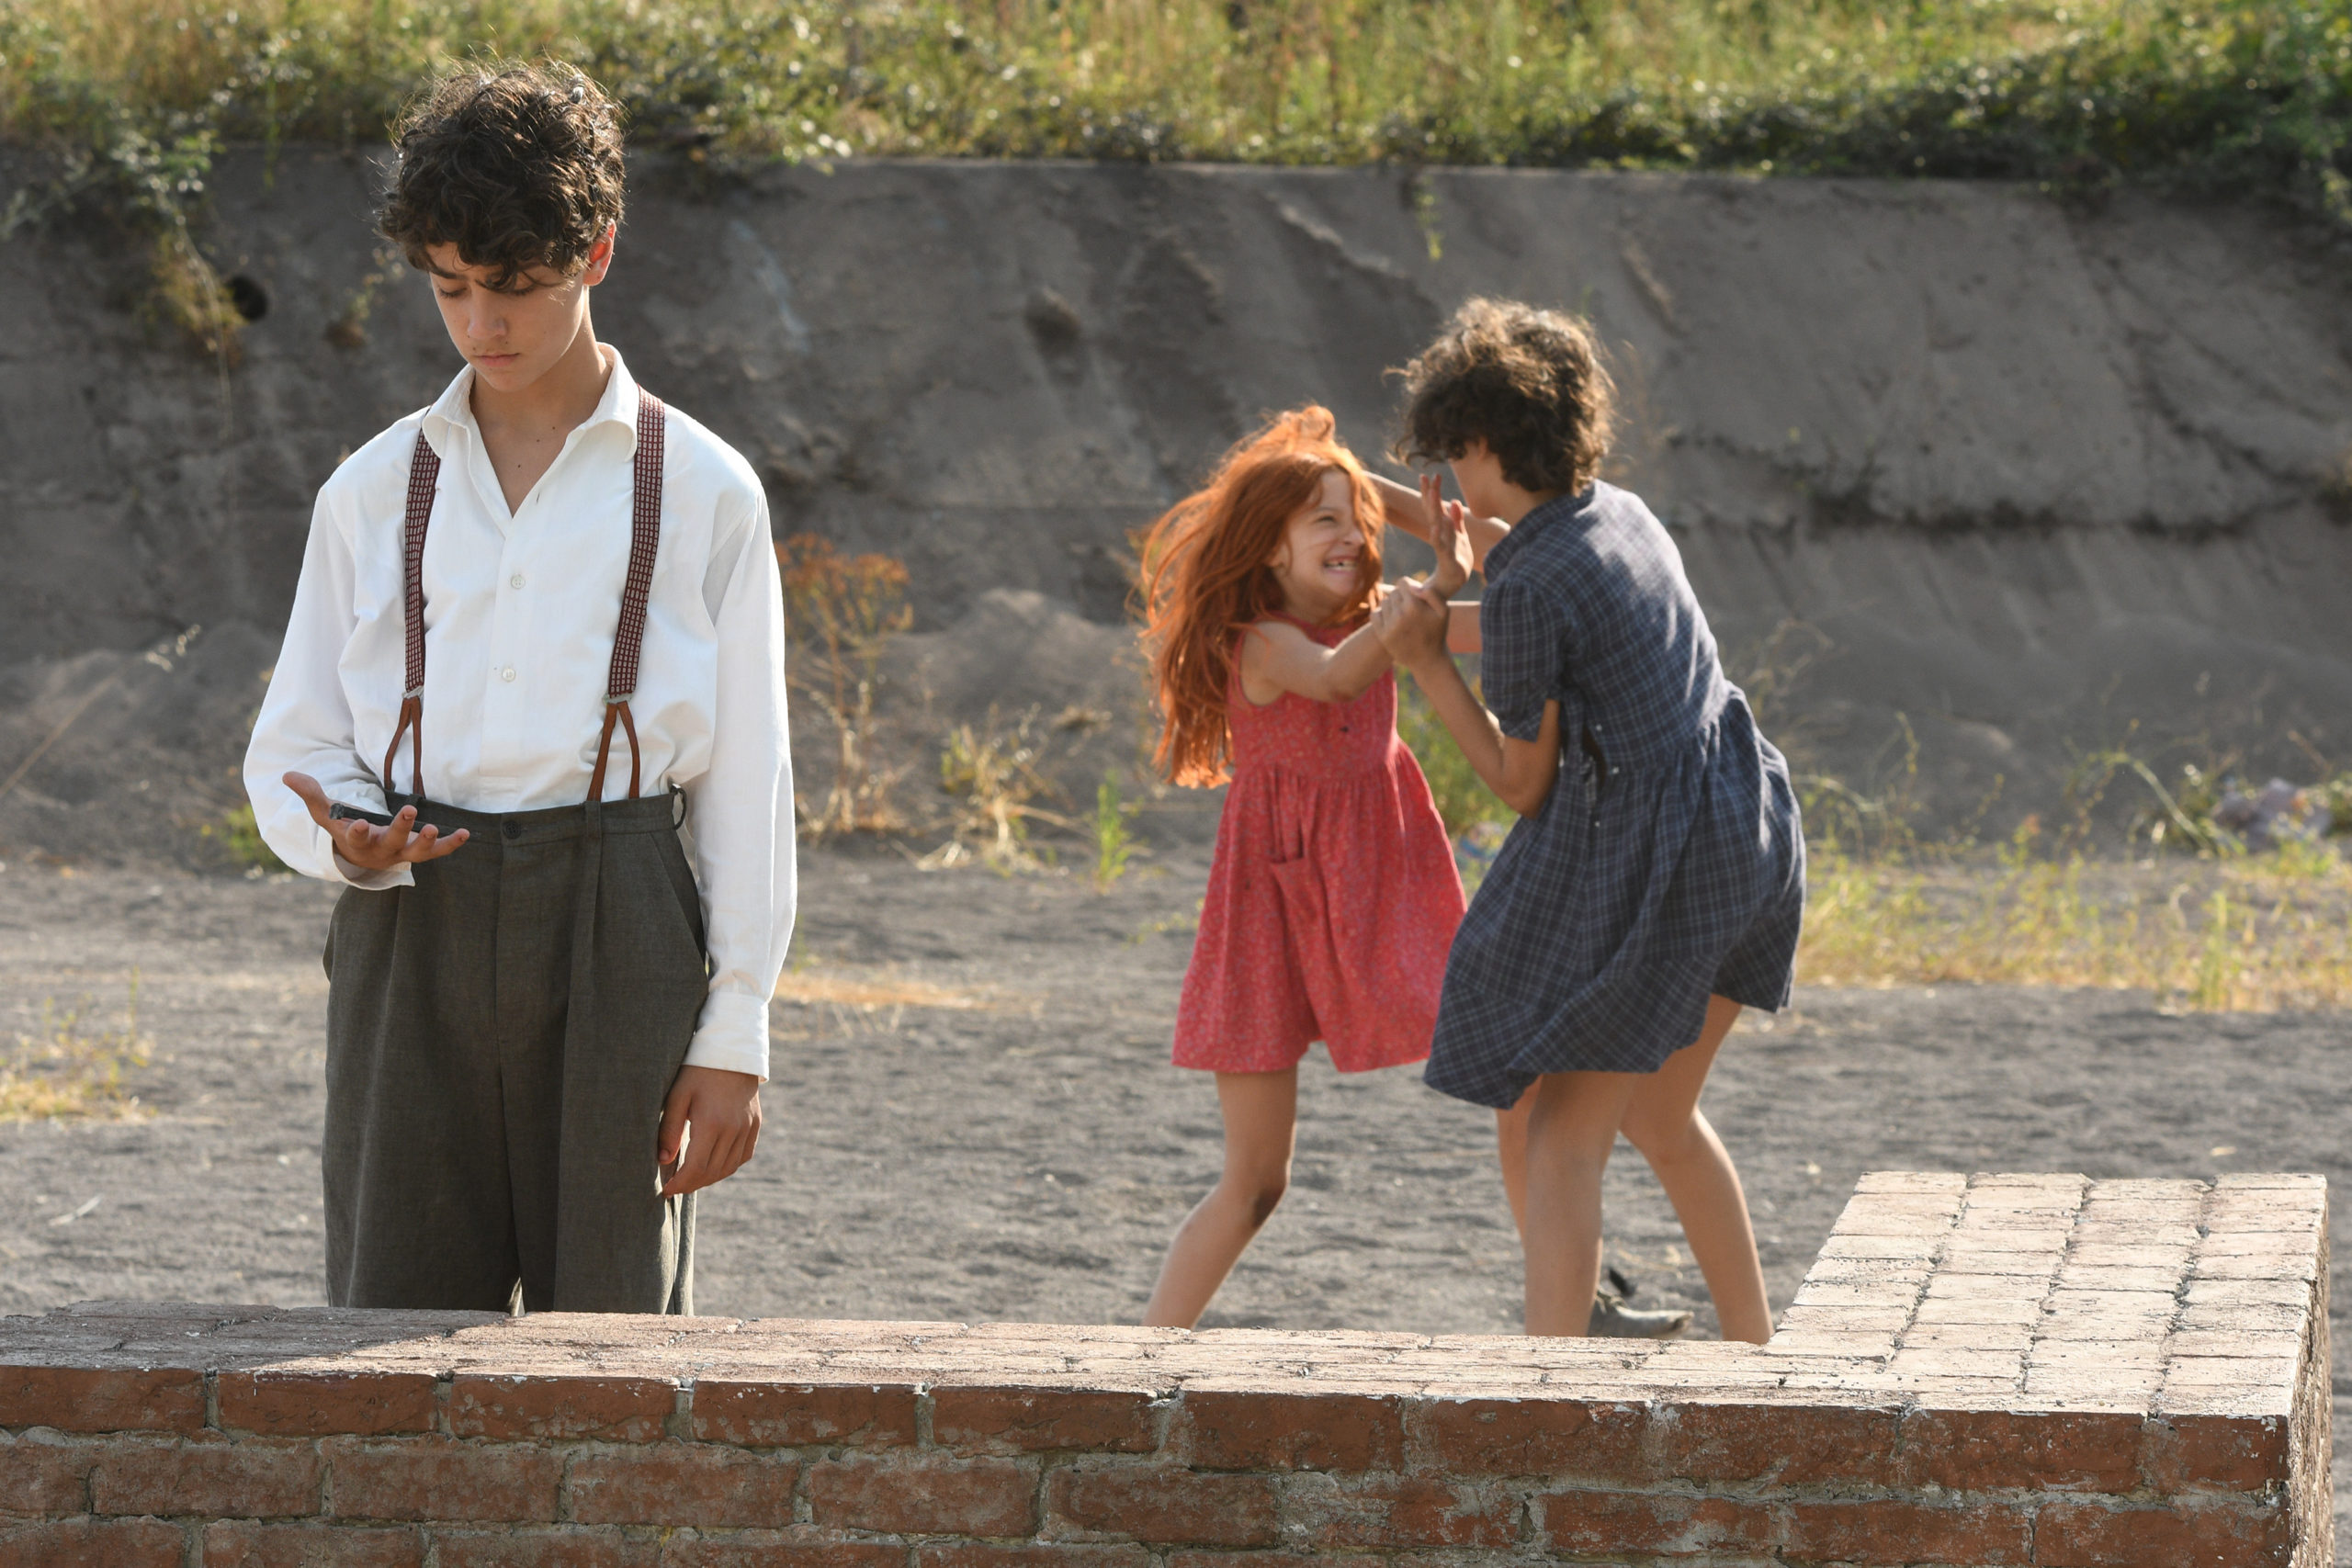 Matteo Pittiruti, Dania Marinoe und Dora Becker in "Leonora addio". Foto: Umberto Montiroli